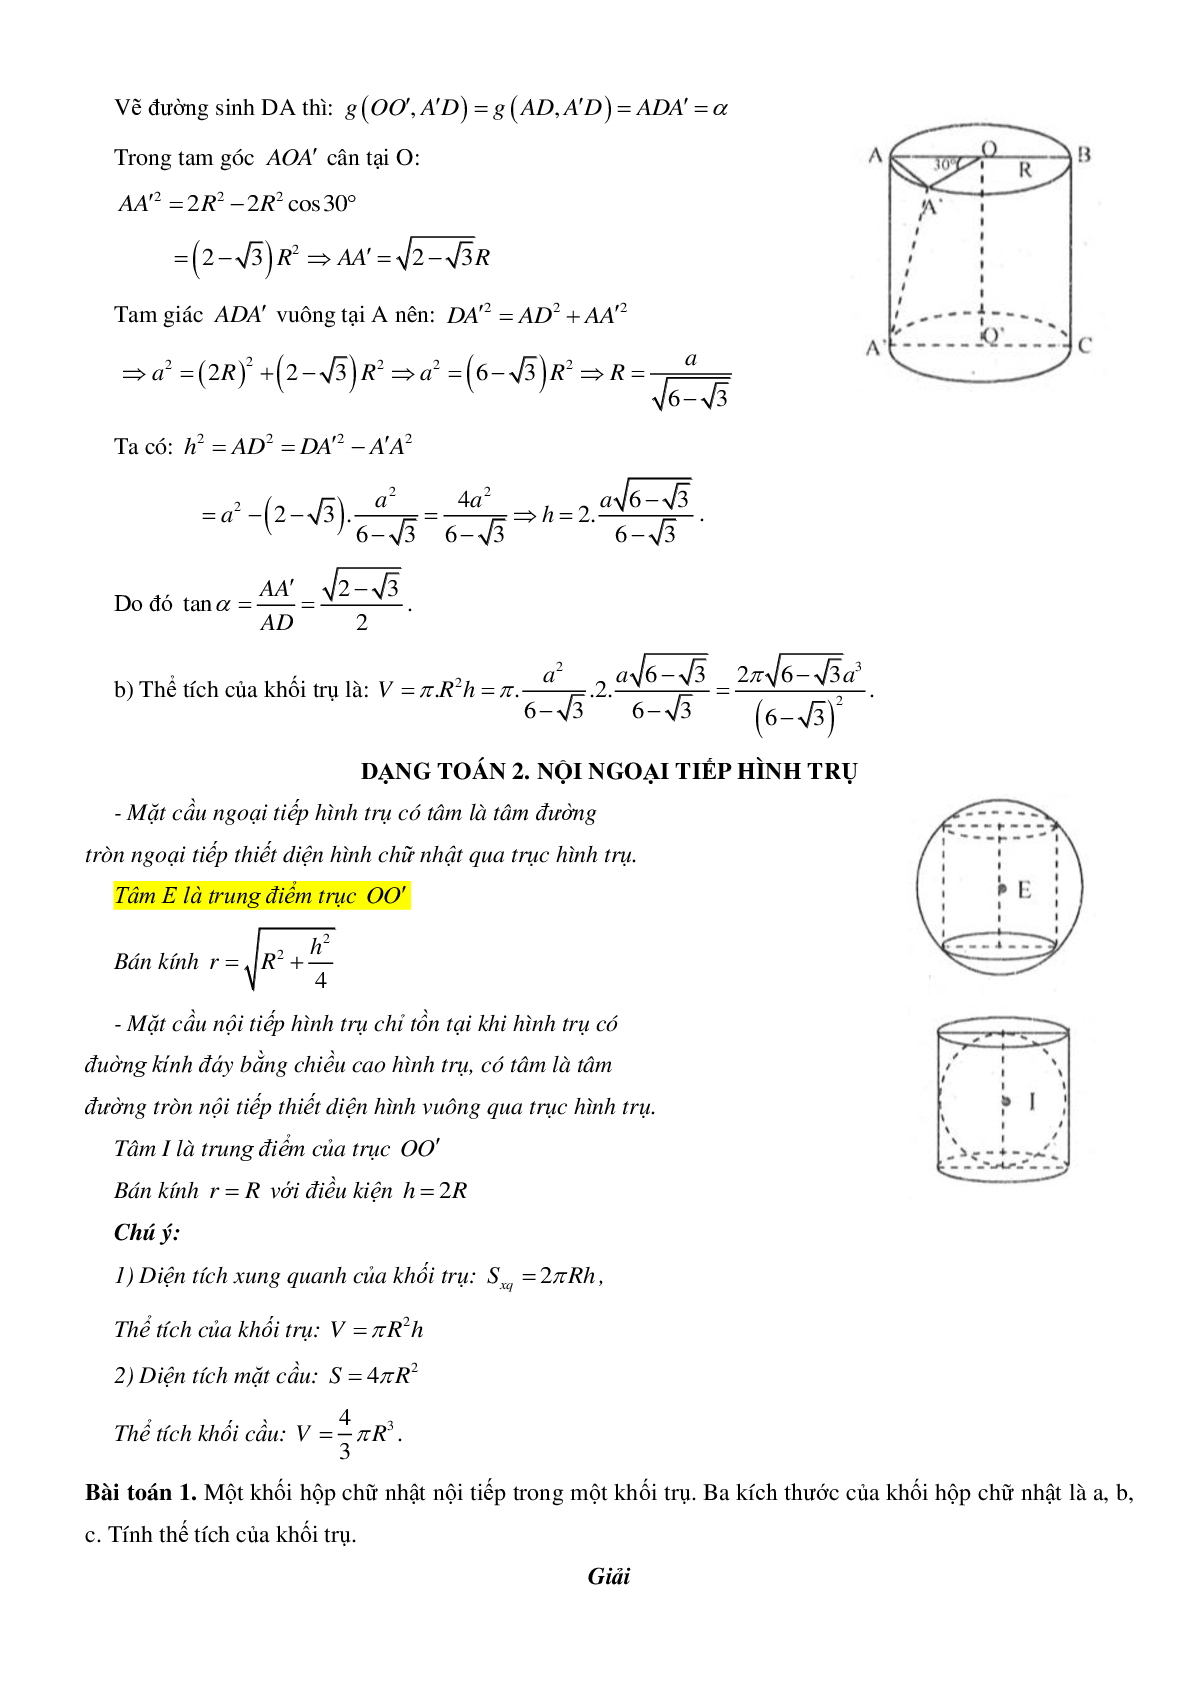 Mặt trụ - Hình trụ - Khối trụ - Ôn thi THPT QG môn toán (trang 4)